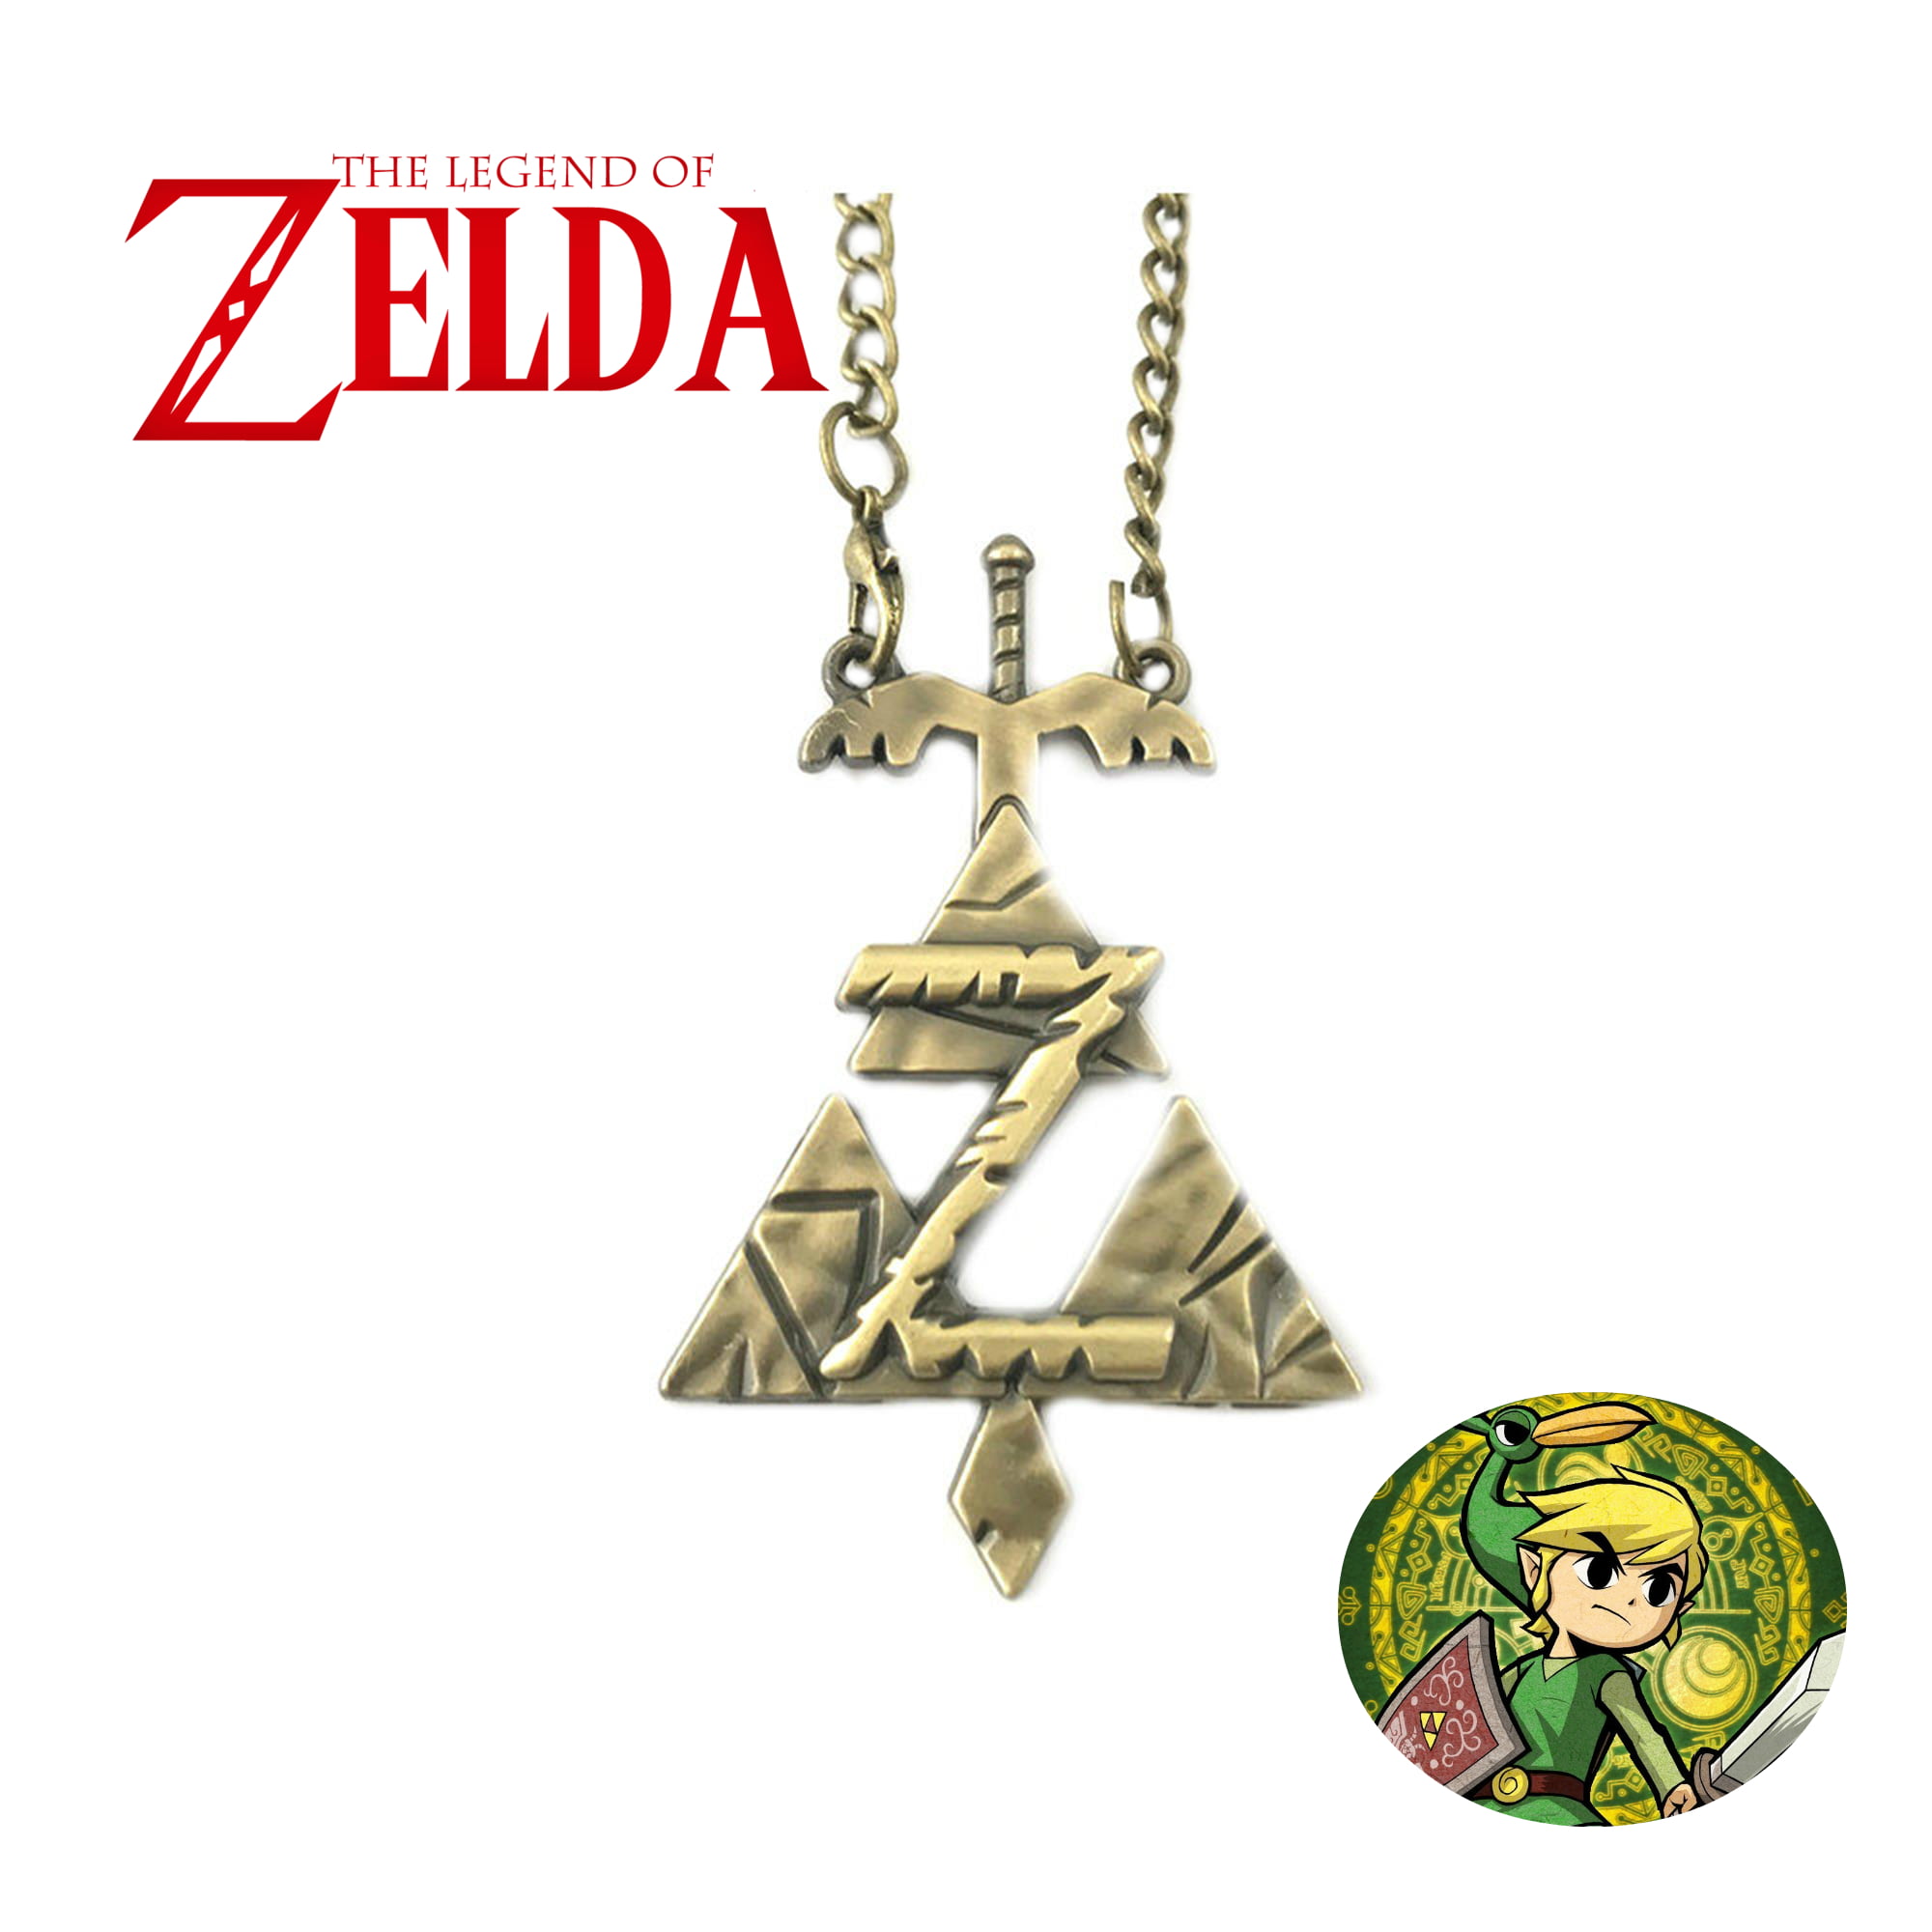 La légende de Zelda, Triforce, collier, pendentif, lien, Ganon